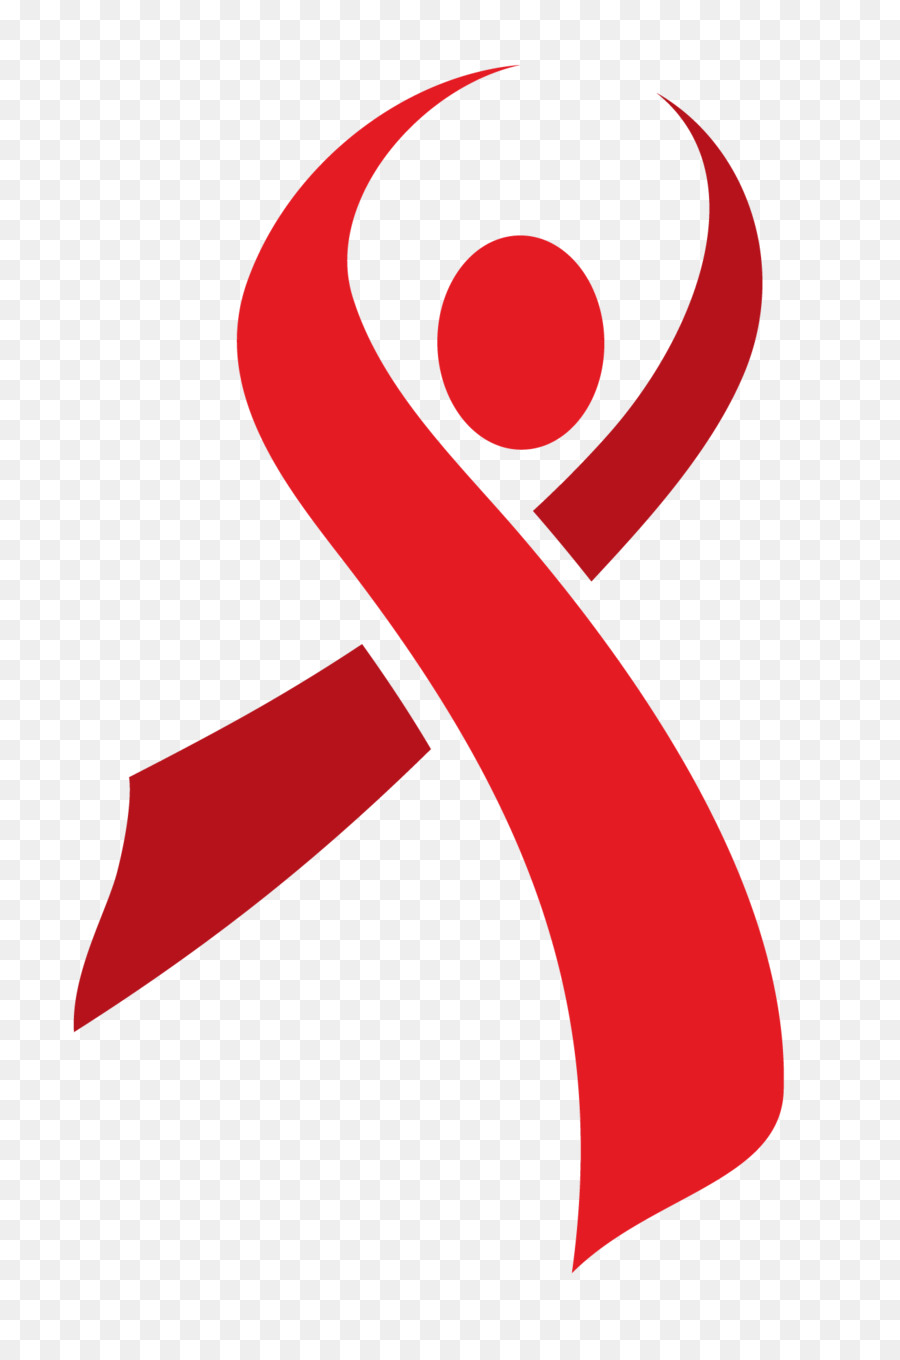 Red ribbon Marathon Pasay AIDS - ribbon png download - 1315*1978 - Free Transparent Red Ribbon png Download.